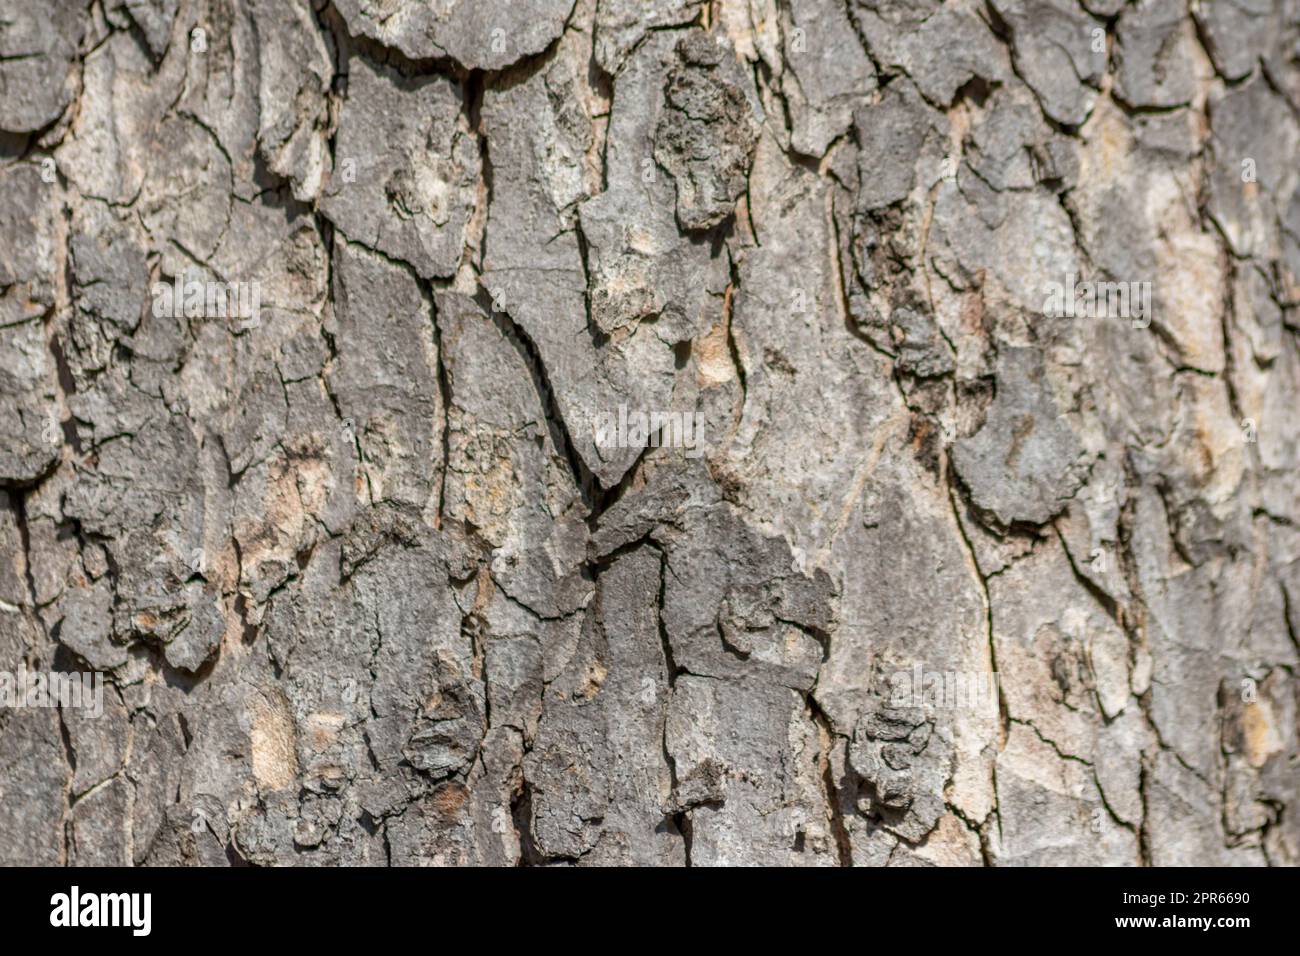 La corteccia degli alberi macro con strutture naturali fini e corteccia ruvida come sfondo naturale ed ecologico mostra una bella struttura in legno con cicatrici e protezione come habitat per piccoli insetti Foto Stock